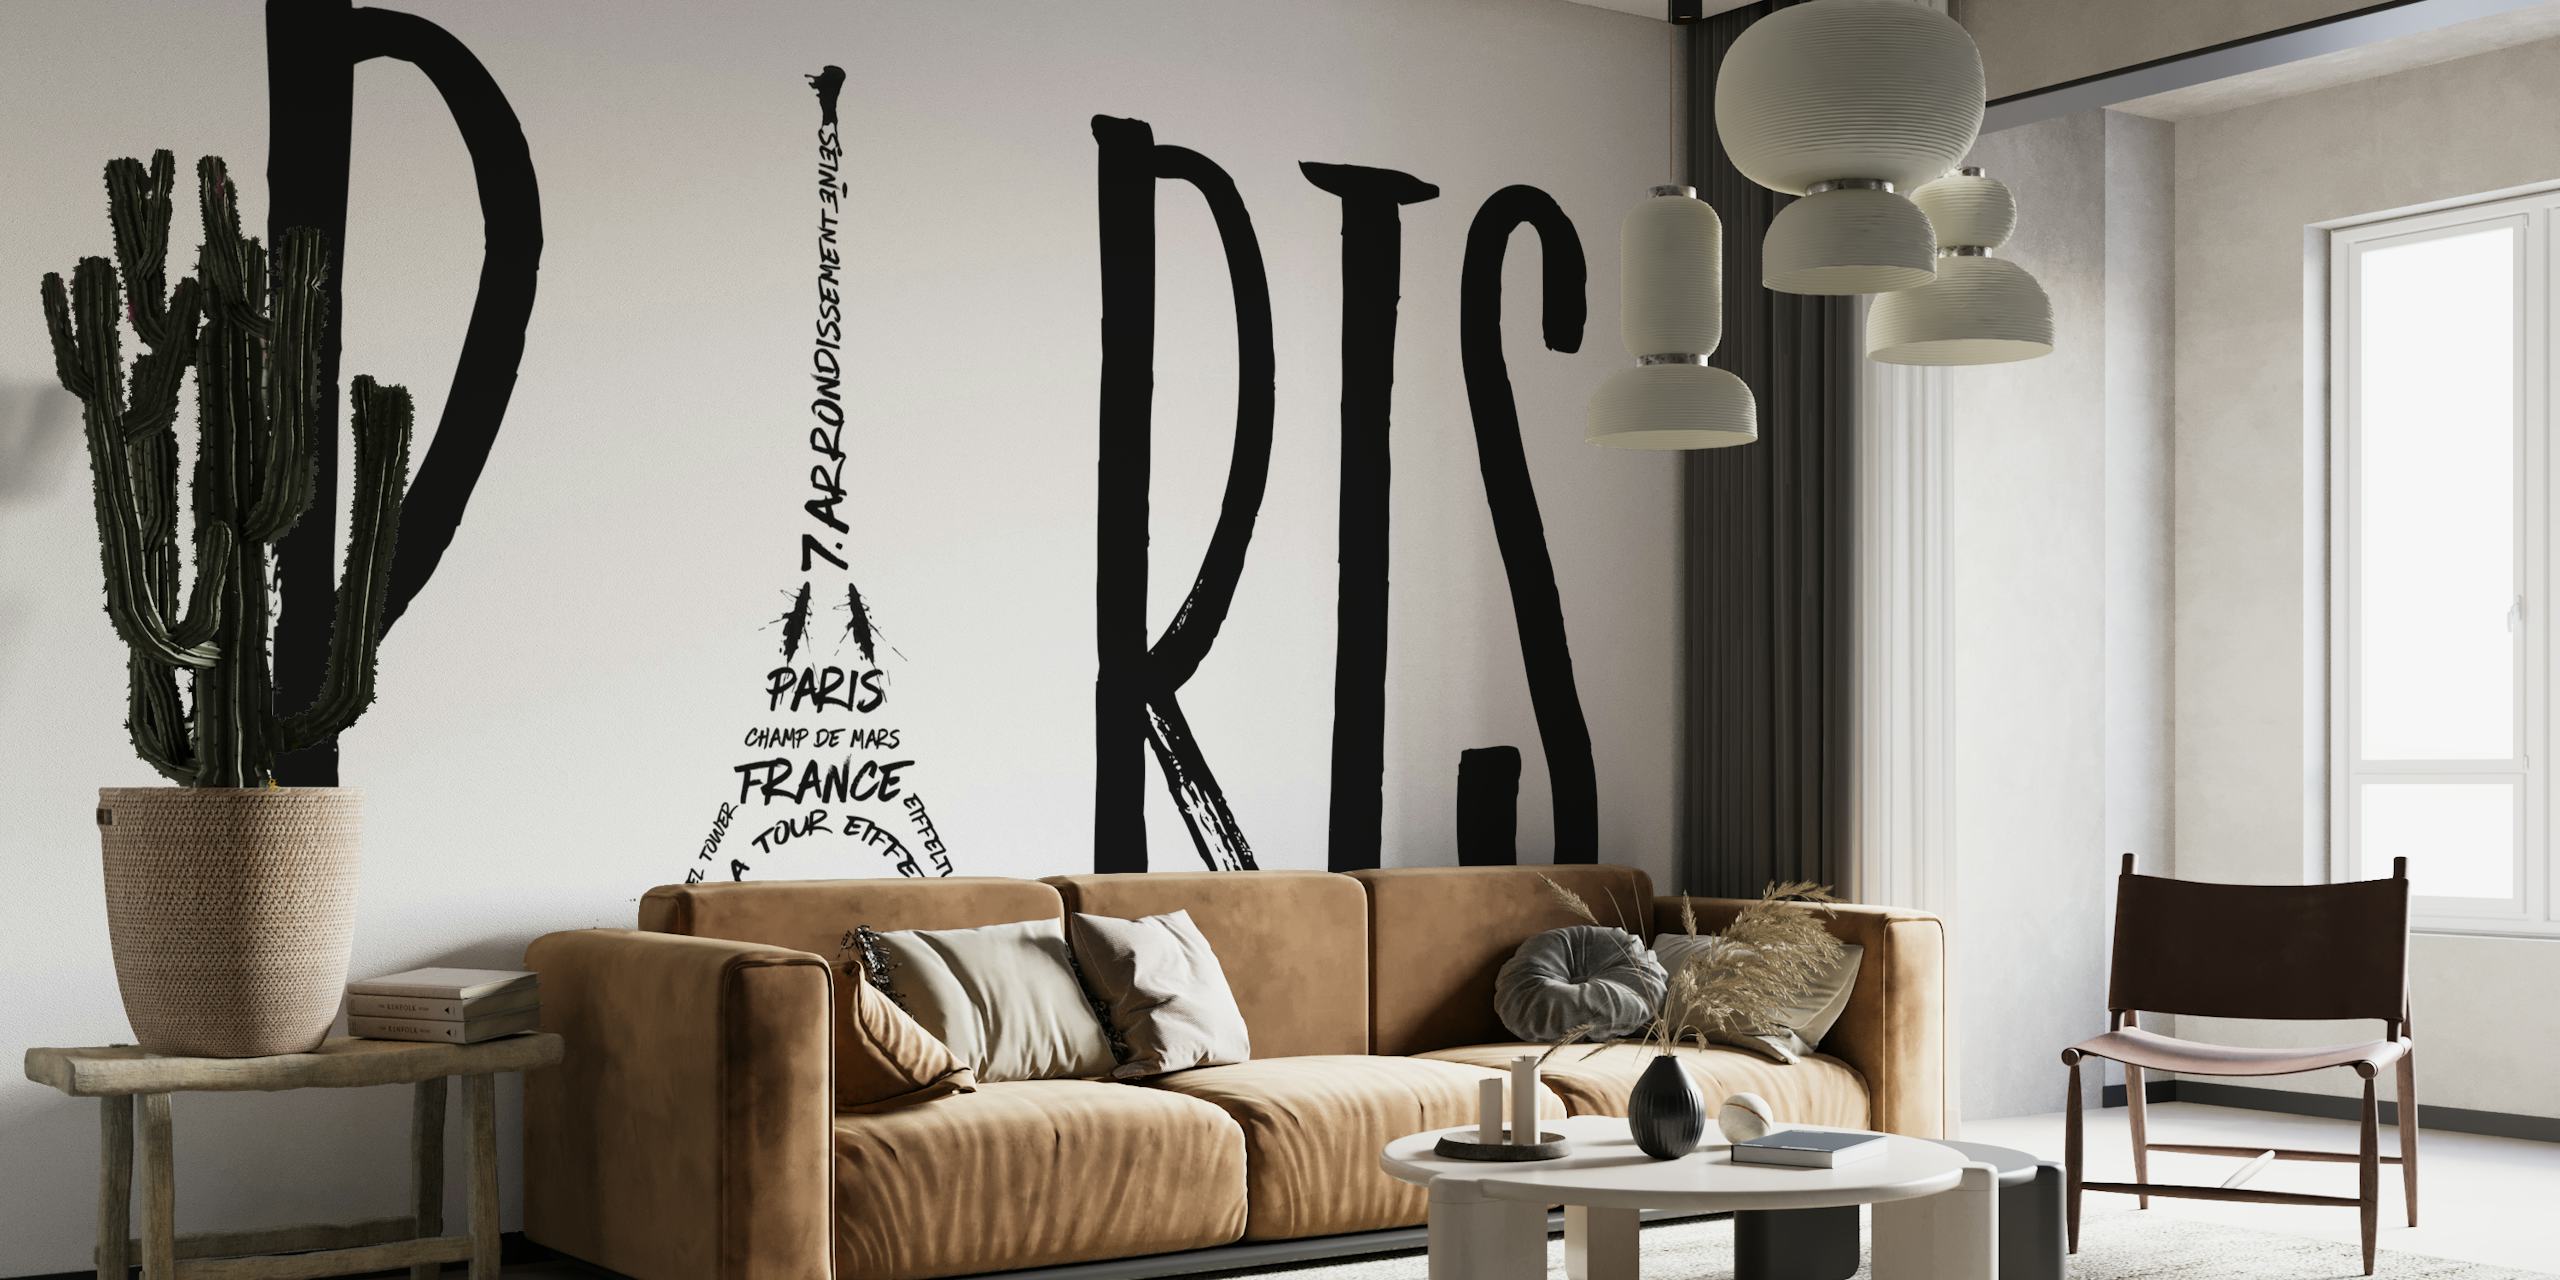 Sort og hvid Paris typografi kunst med Eiffeltårnet integreret i designet